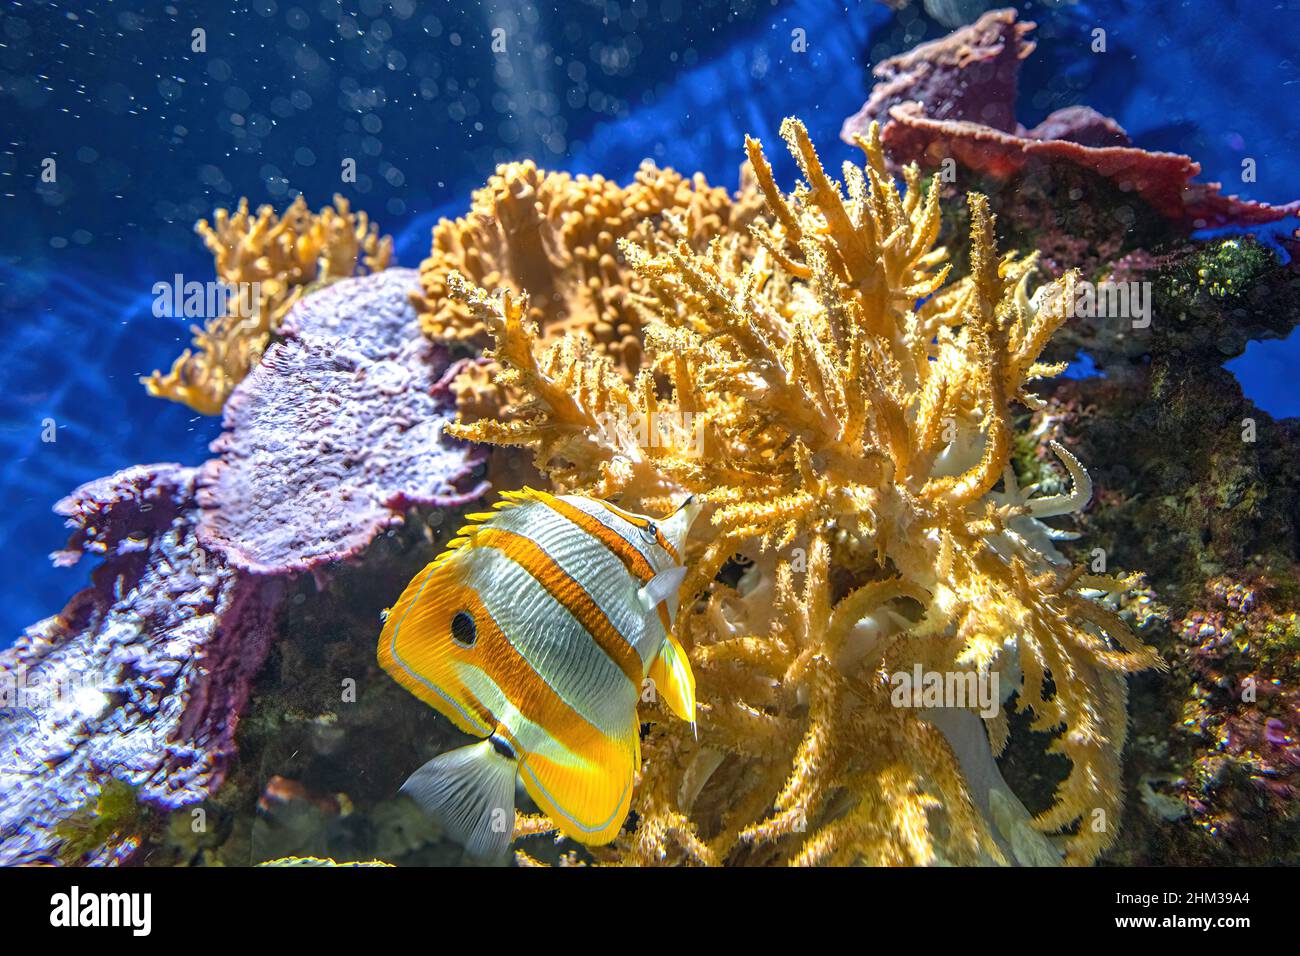 Copperband butterflyfish o peces coralinos en el arrecife de coral. Chelmon rostratus Especie de peces de la familia Chaetodontidae. Vivir Foto de stock